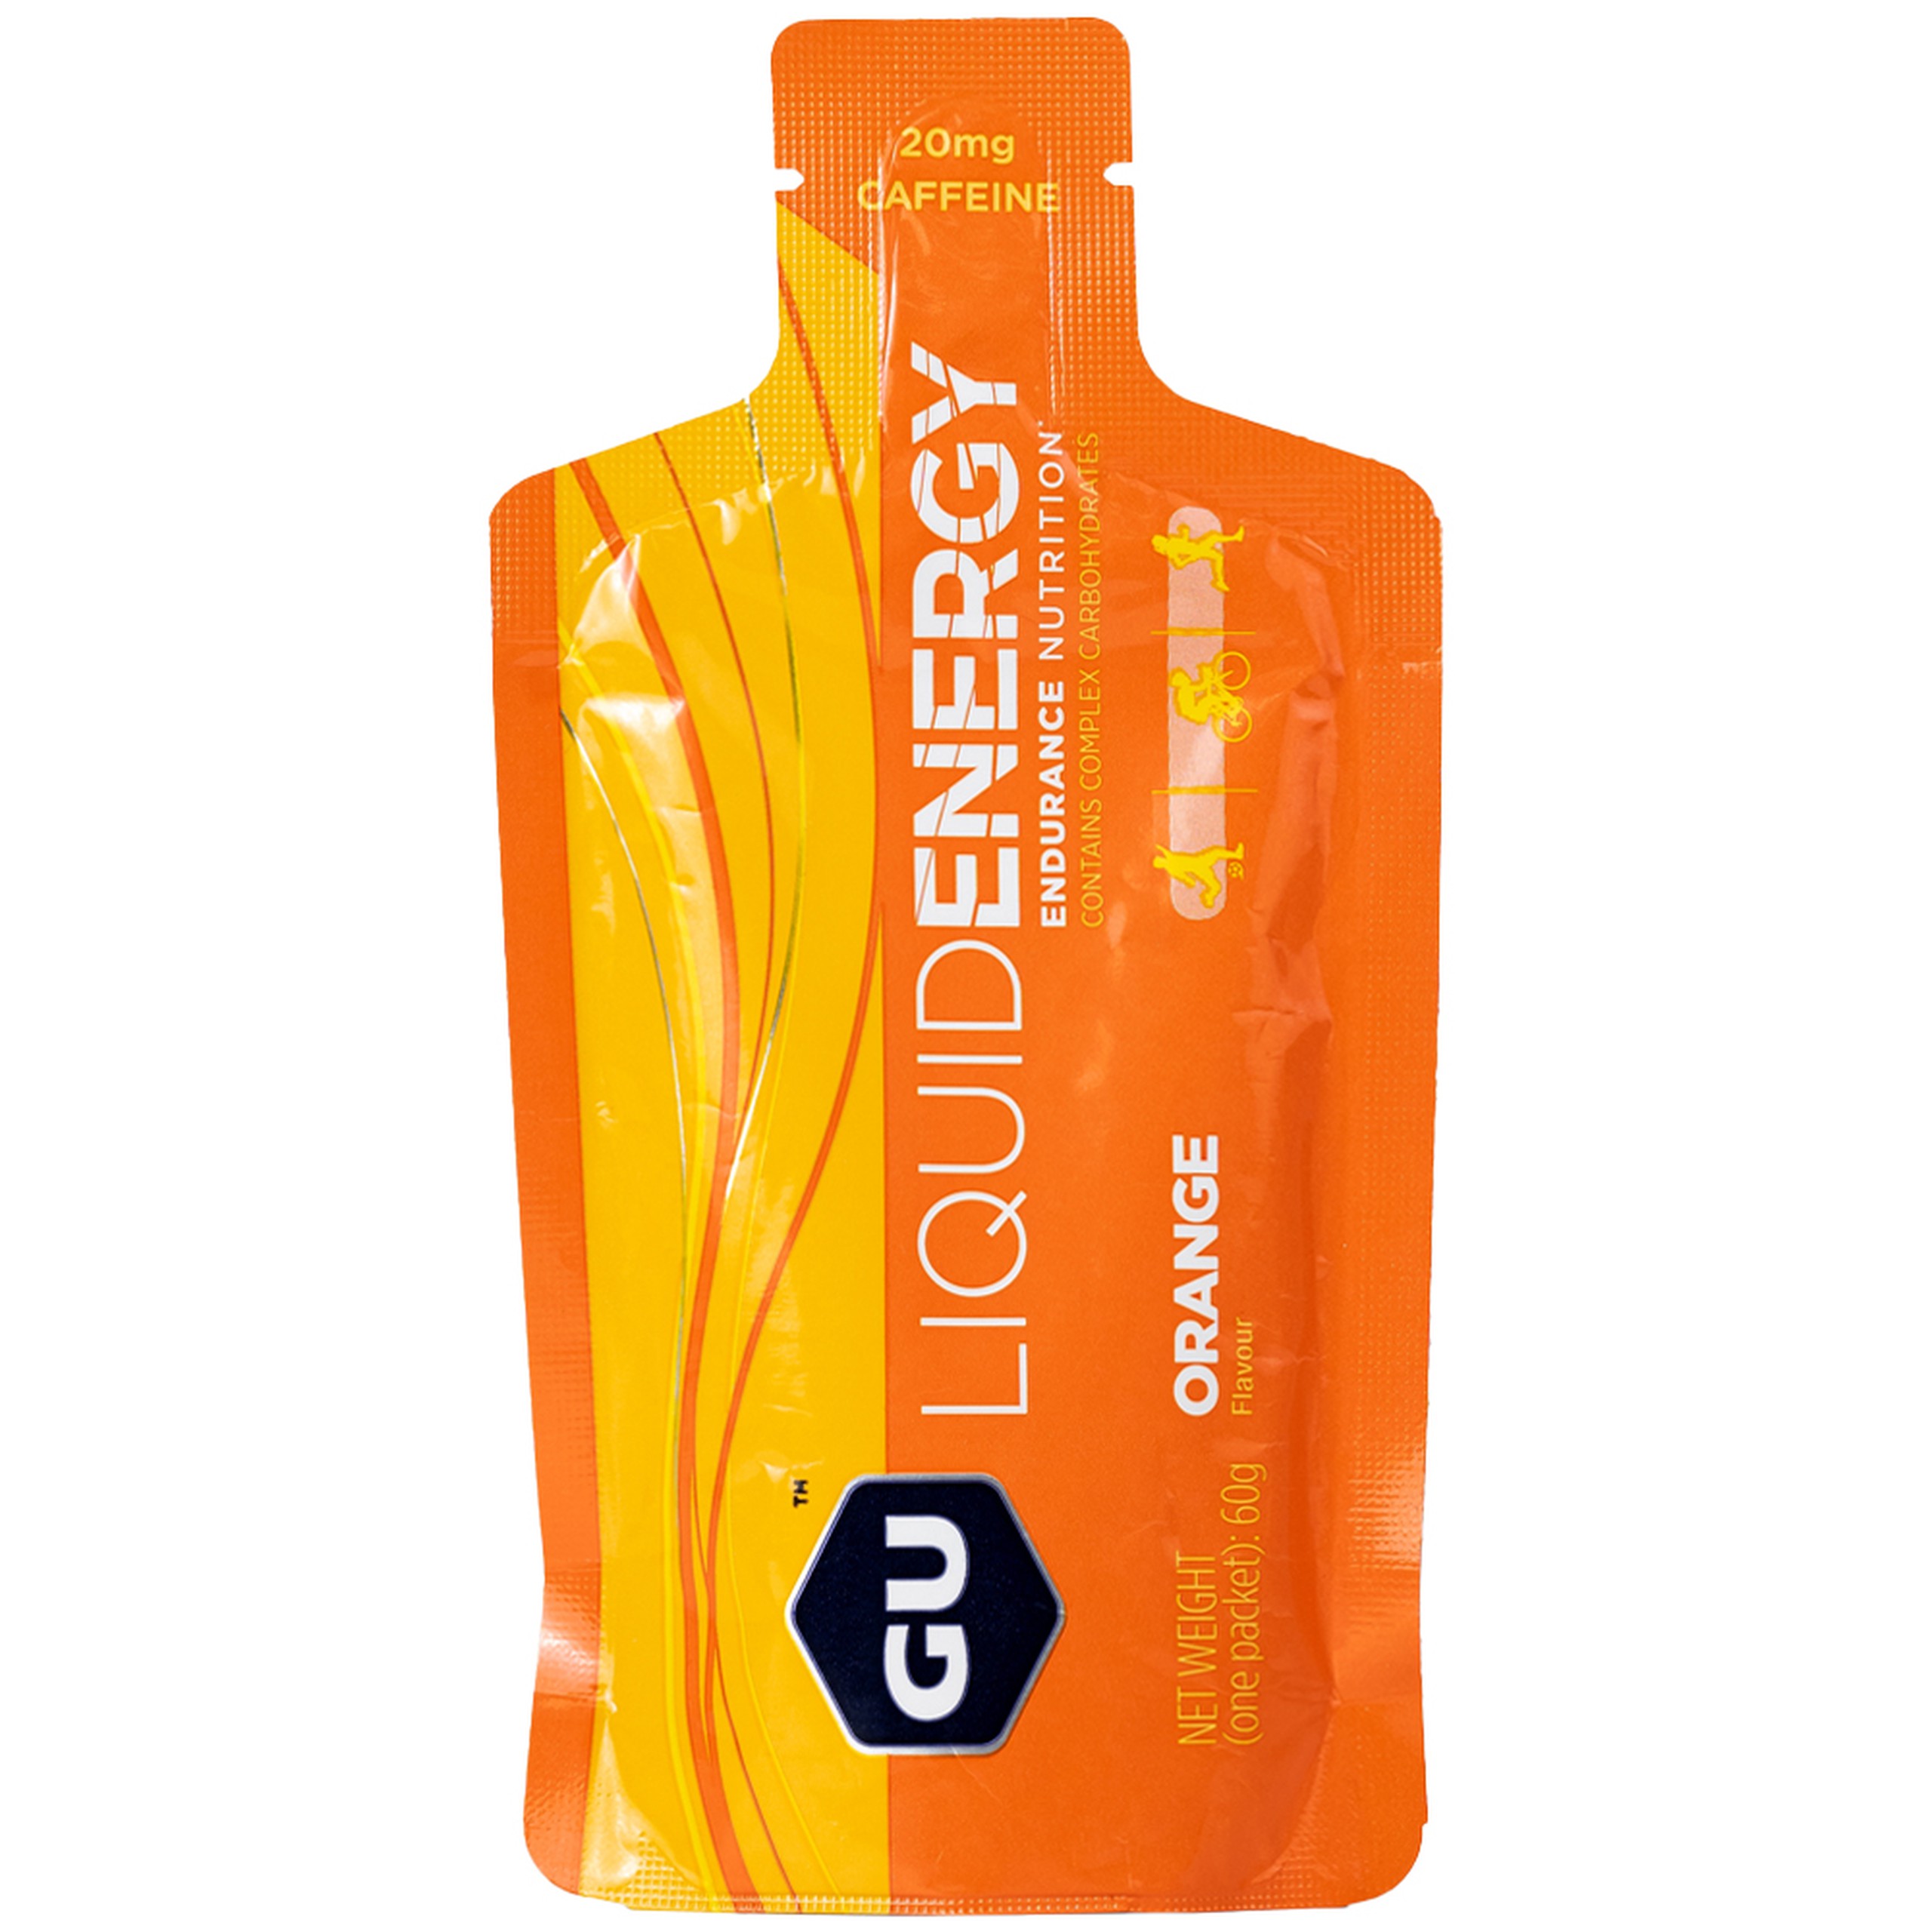 Thực phẩm bổ sung GU Gel Liquid Energy Orange 60g bổ sung năng lượng trong các hoạt động thể thao